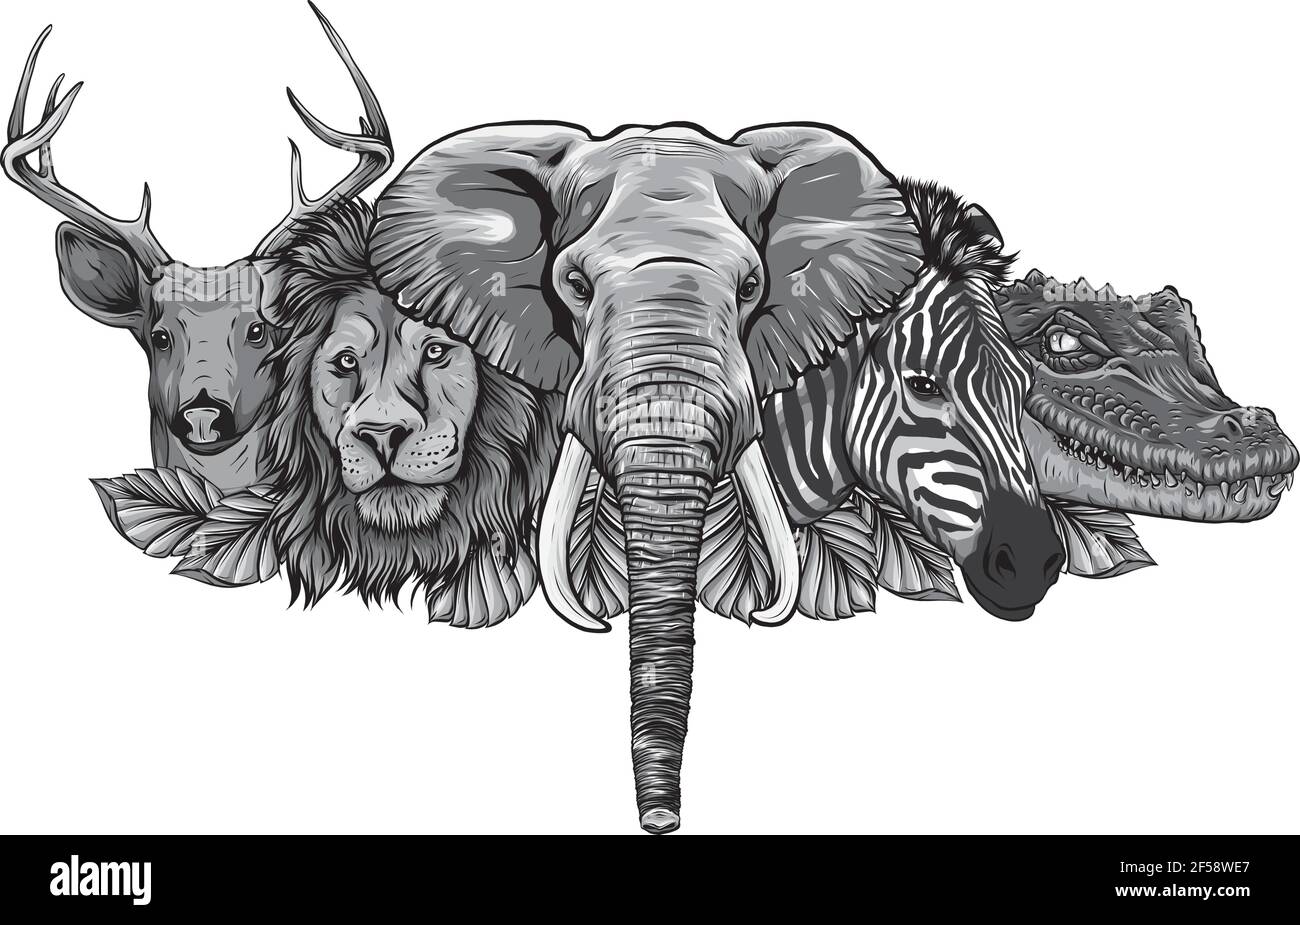 Diseño de Cartoon animales salvajes africanos sobre fondo blanco Ilustración del Vector